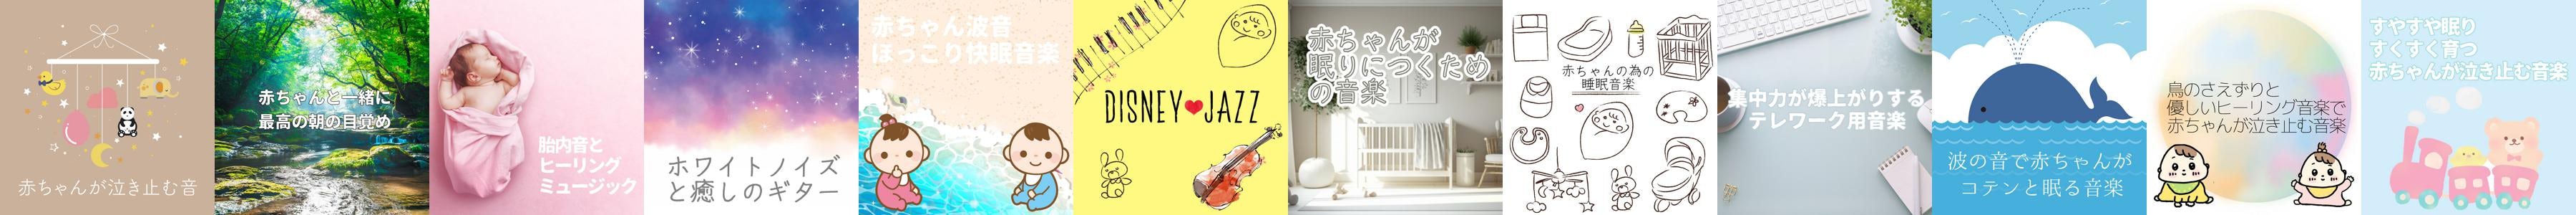 赤ちゃんが泣き止む音 Store Official Merch Vinyl